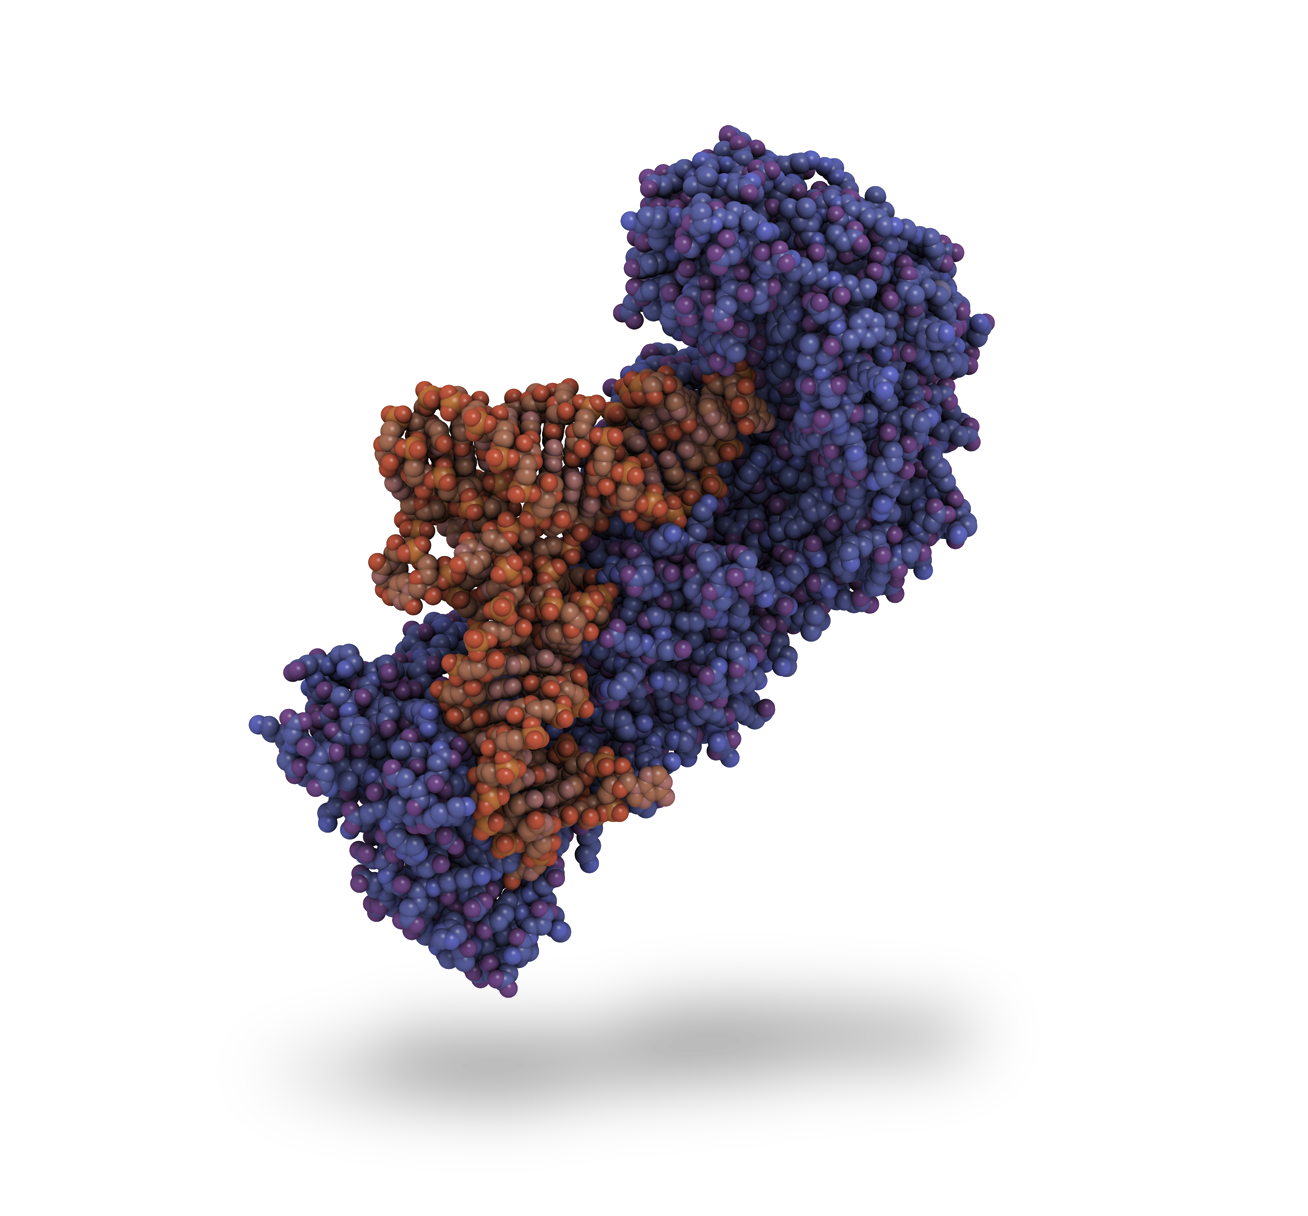 Aminoacyl-tRNA synthetases